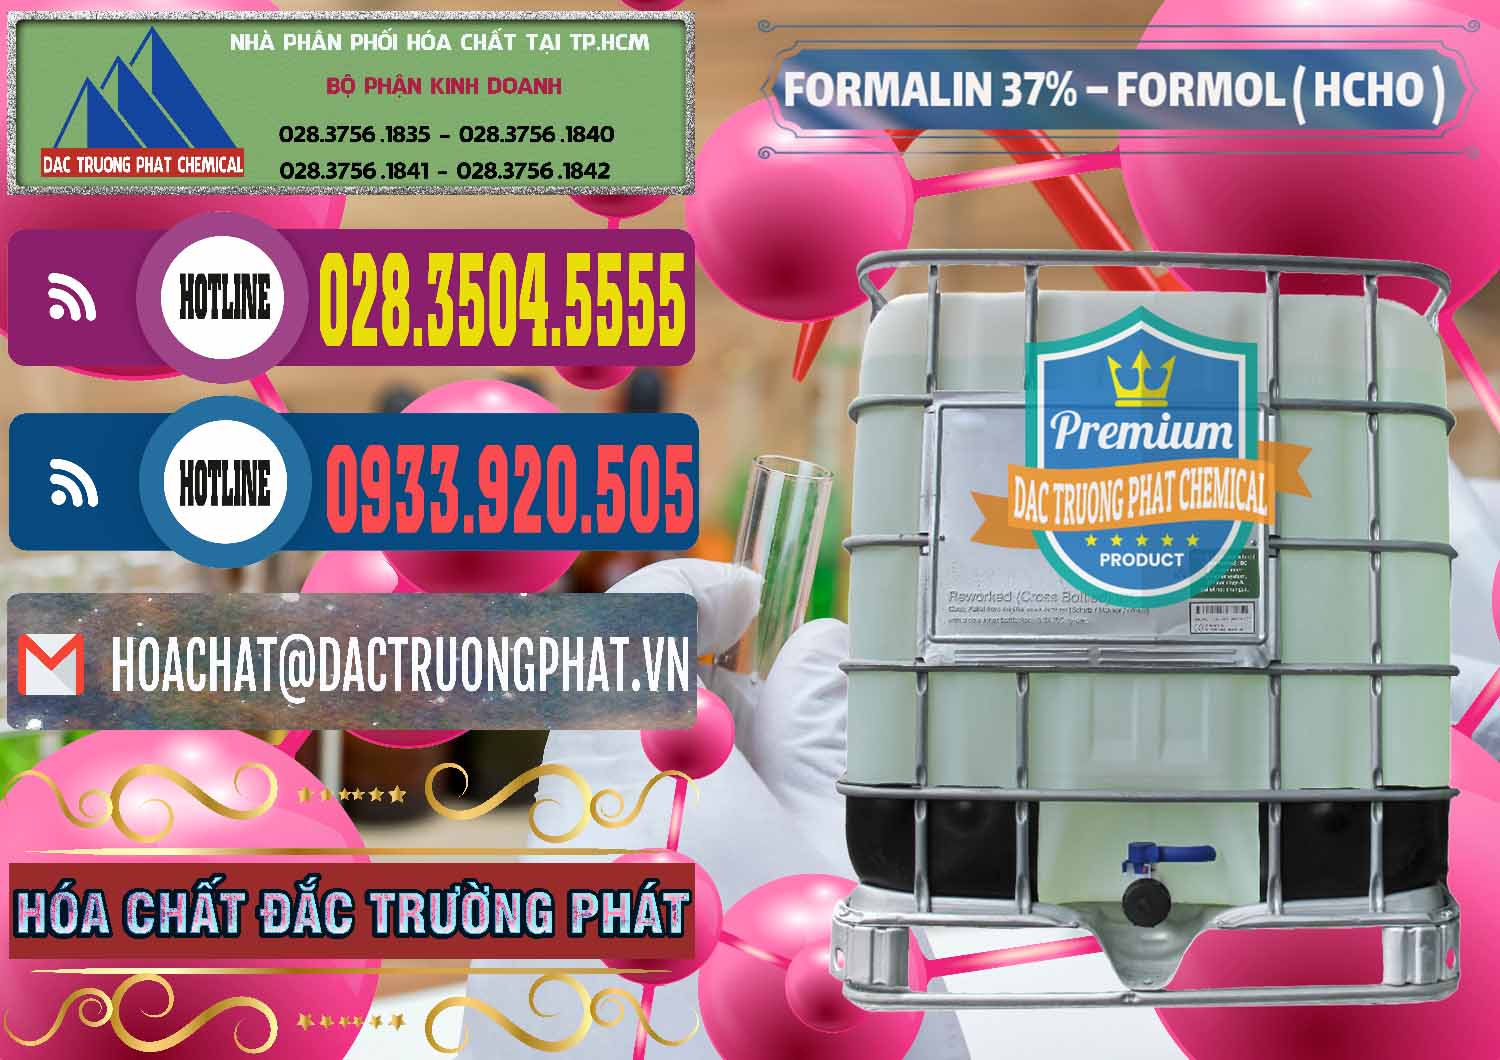 Đơn vị chuyên cung cấp _ kinh doanh Formalin - Formol ( HCHO ) 37% Việt Nam - 0187 - Nơi bán & phân phối hóa chất tại TP.HCM - muabanhoachat.com.vn